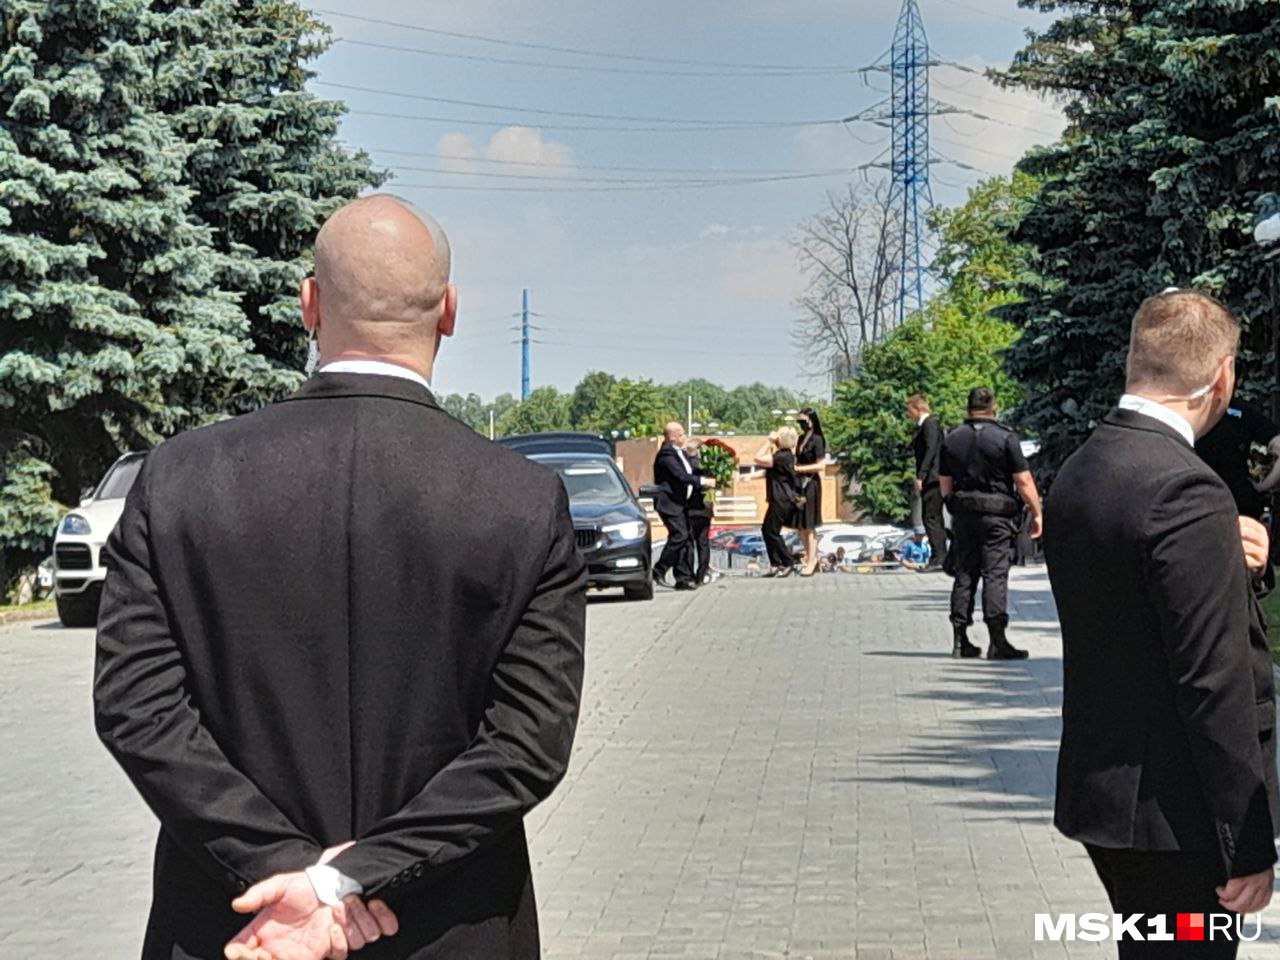 Во второй день прощания на Троекуровское кладбище съехались знаменитости — например, Игорь Крутой (на фото выходит с букетом из машины)